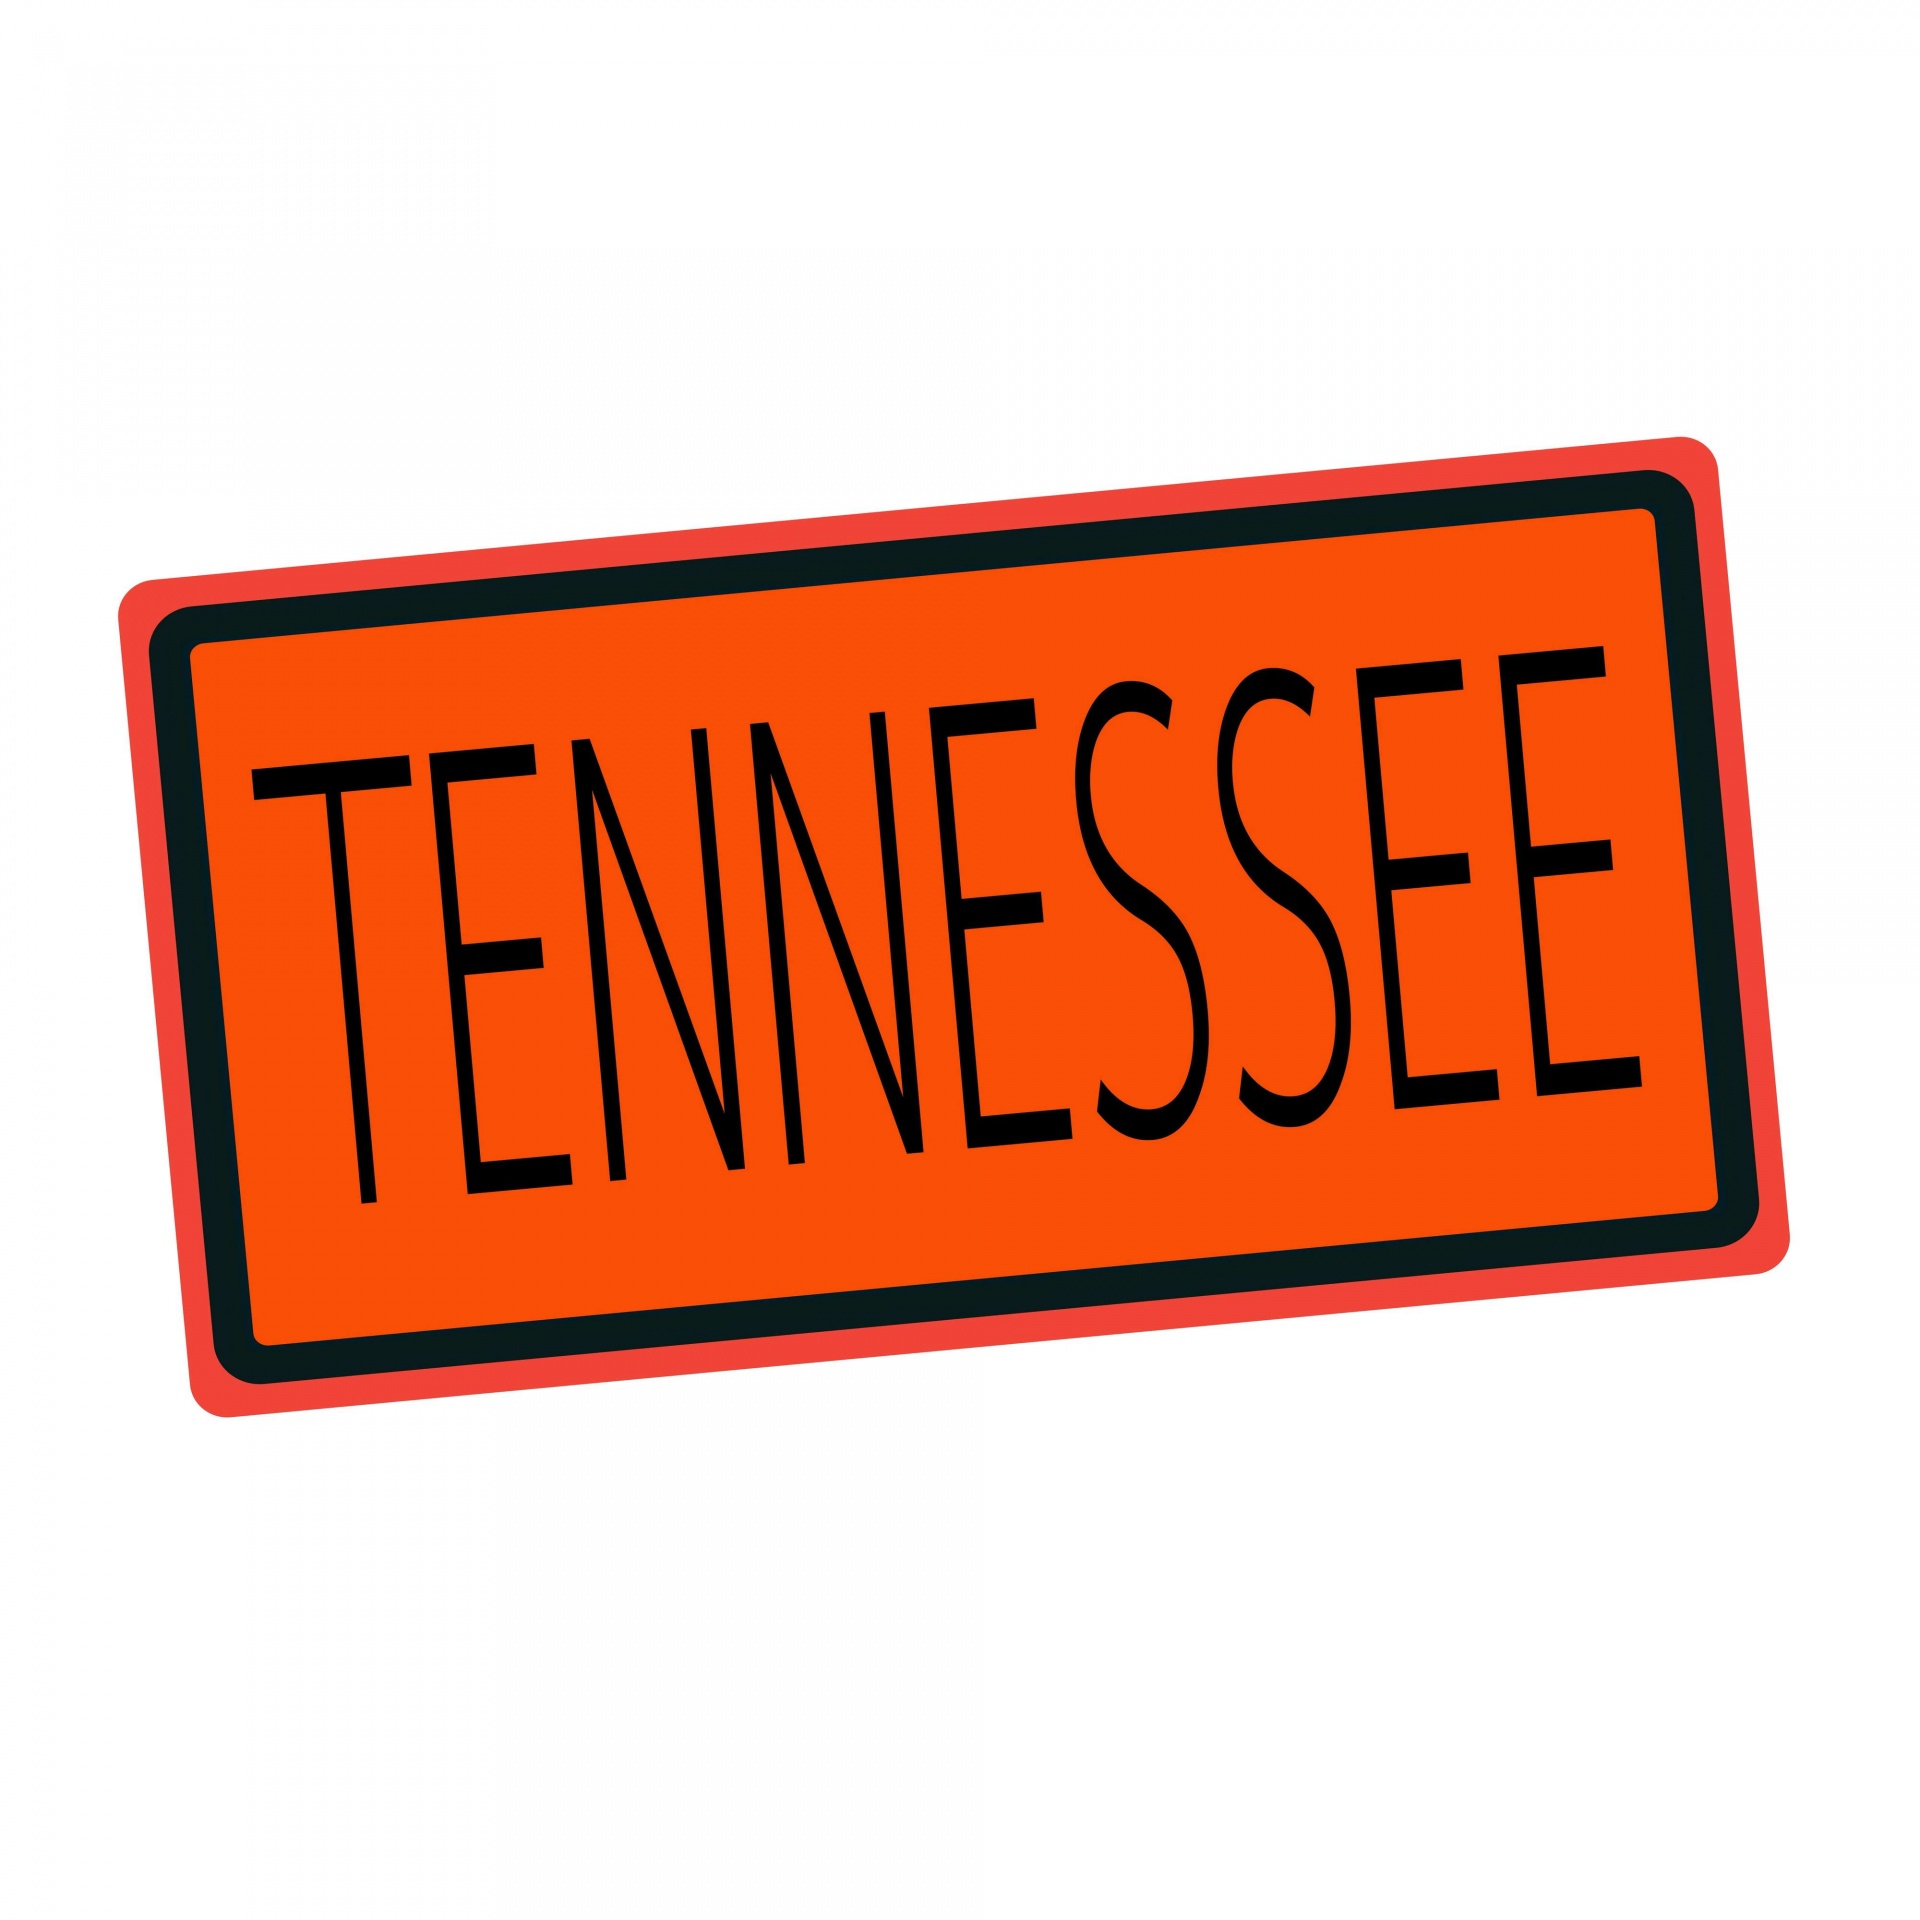 Texto de sello negro de Tennessee en nar